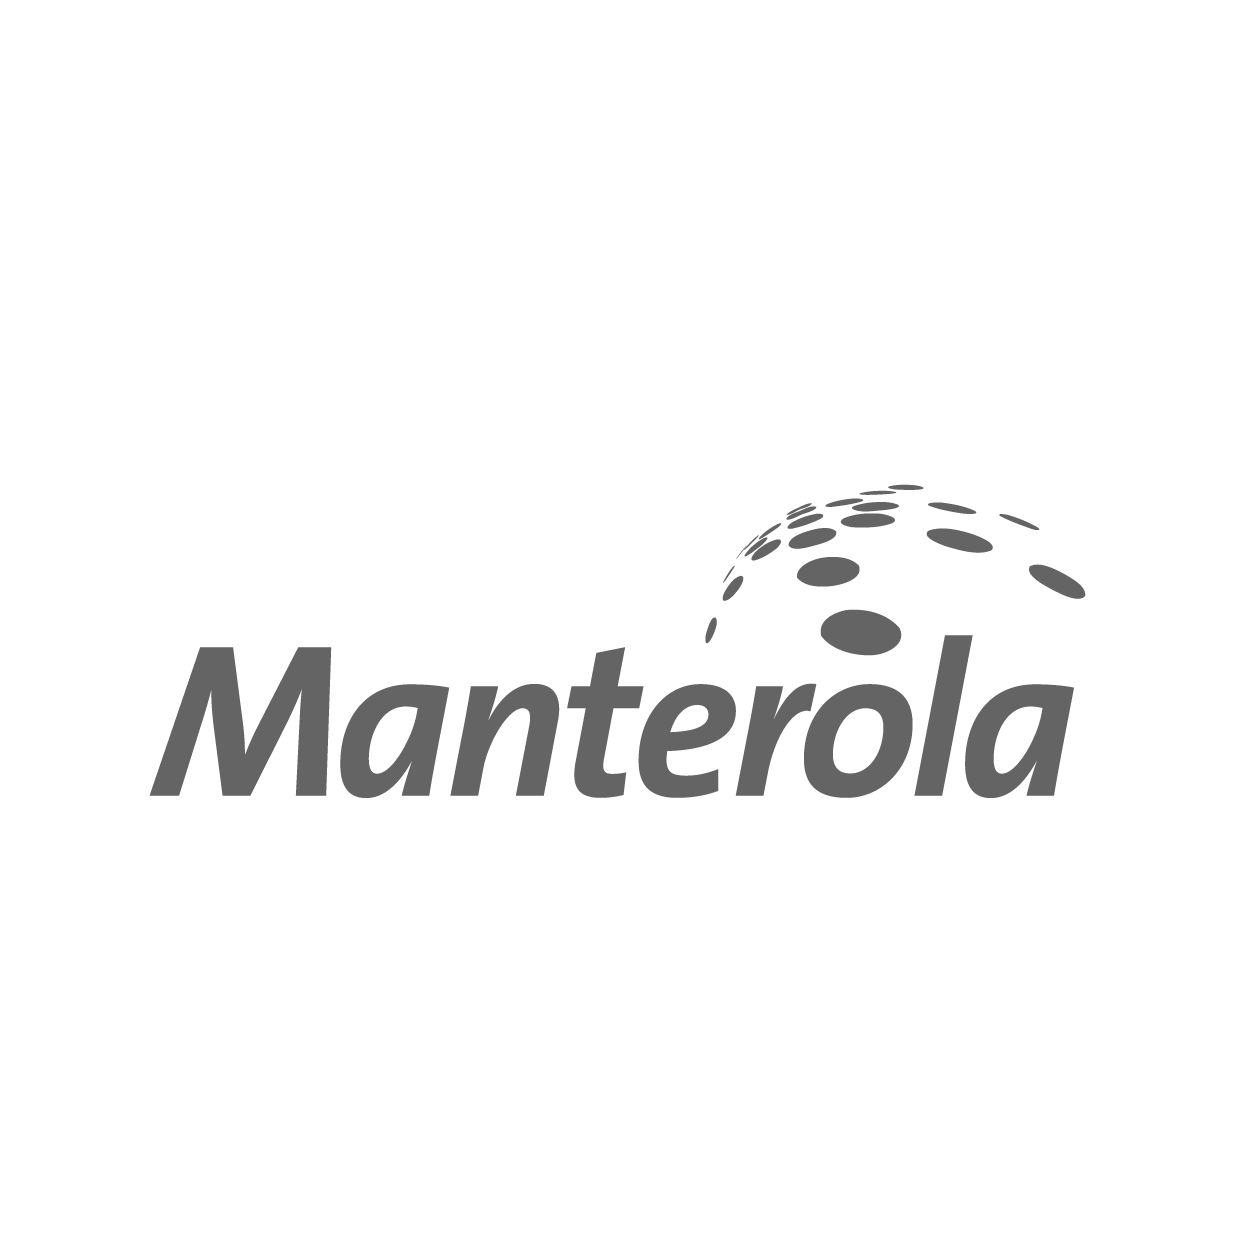 logo_Manterola.png